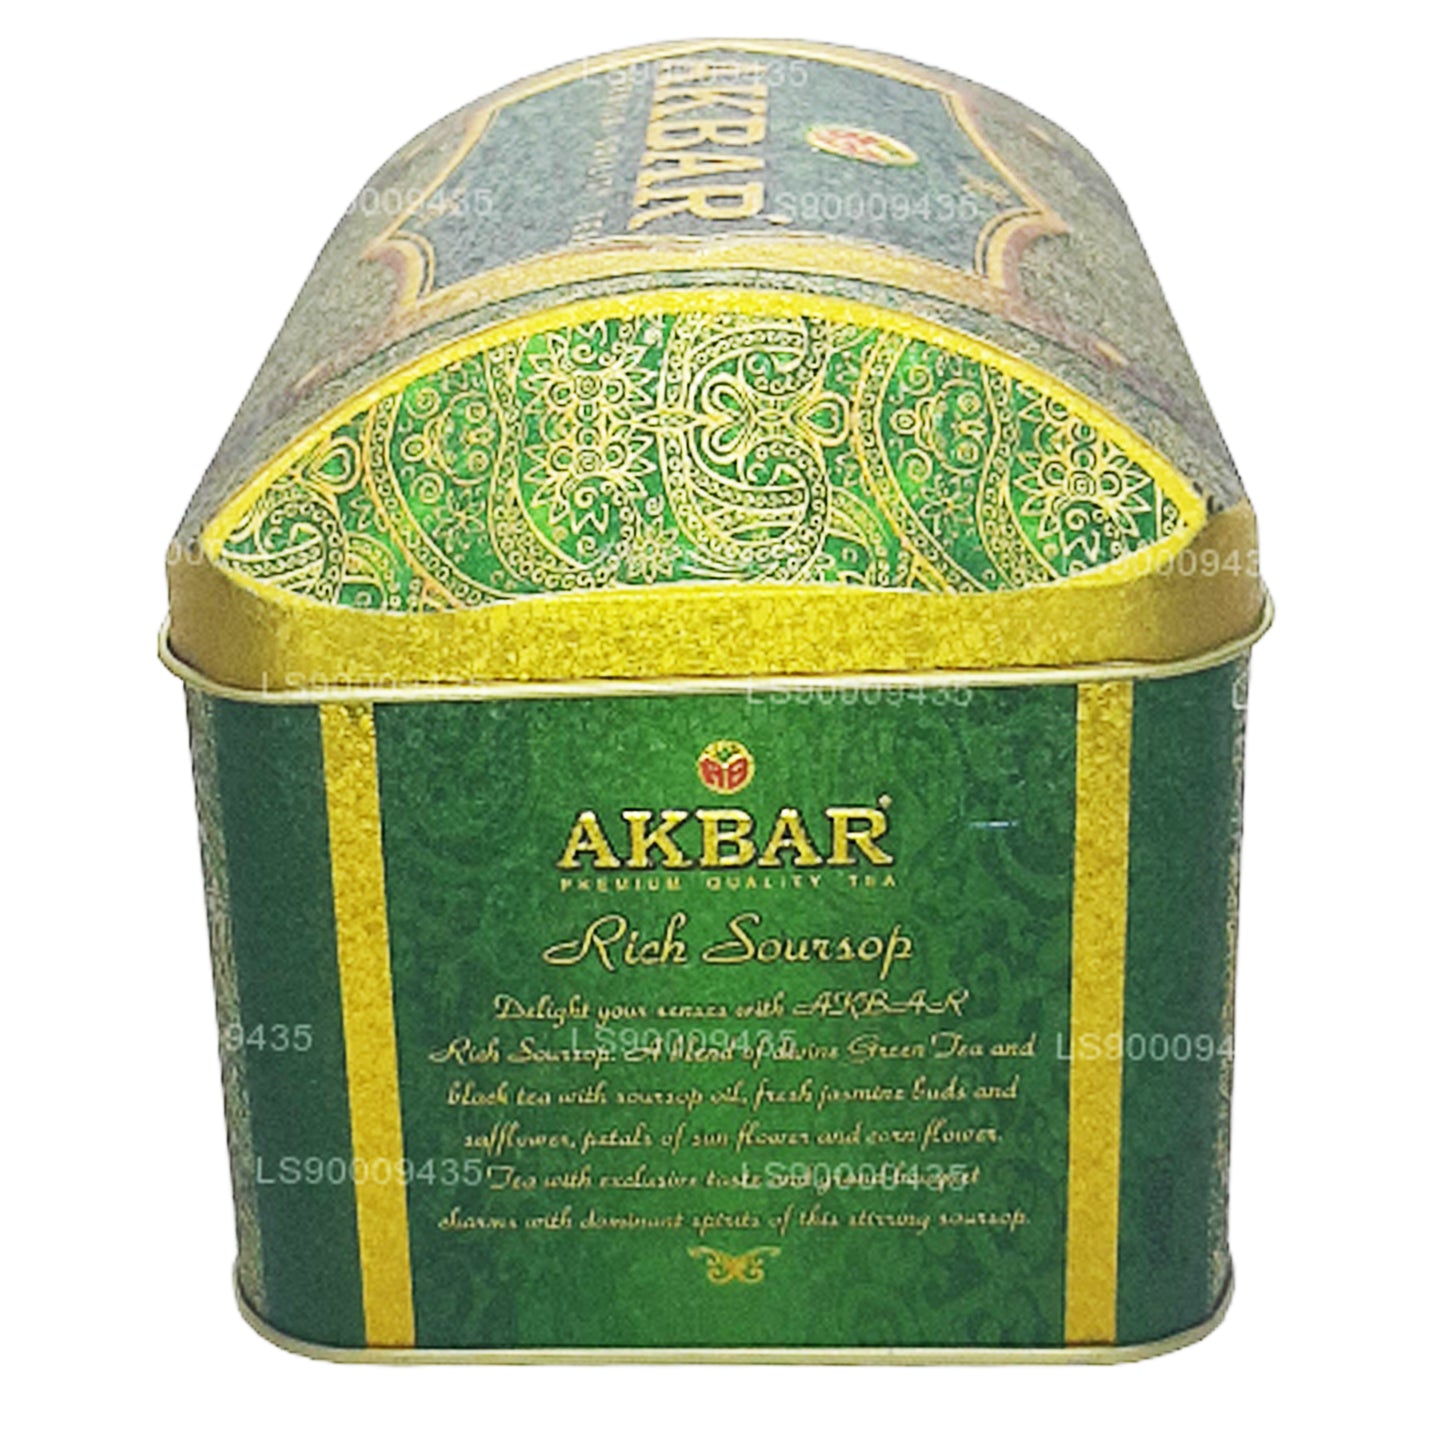 Boîte à trésors pour corossol Akbar Exclusive Collection (250 g)